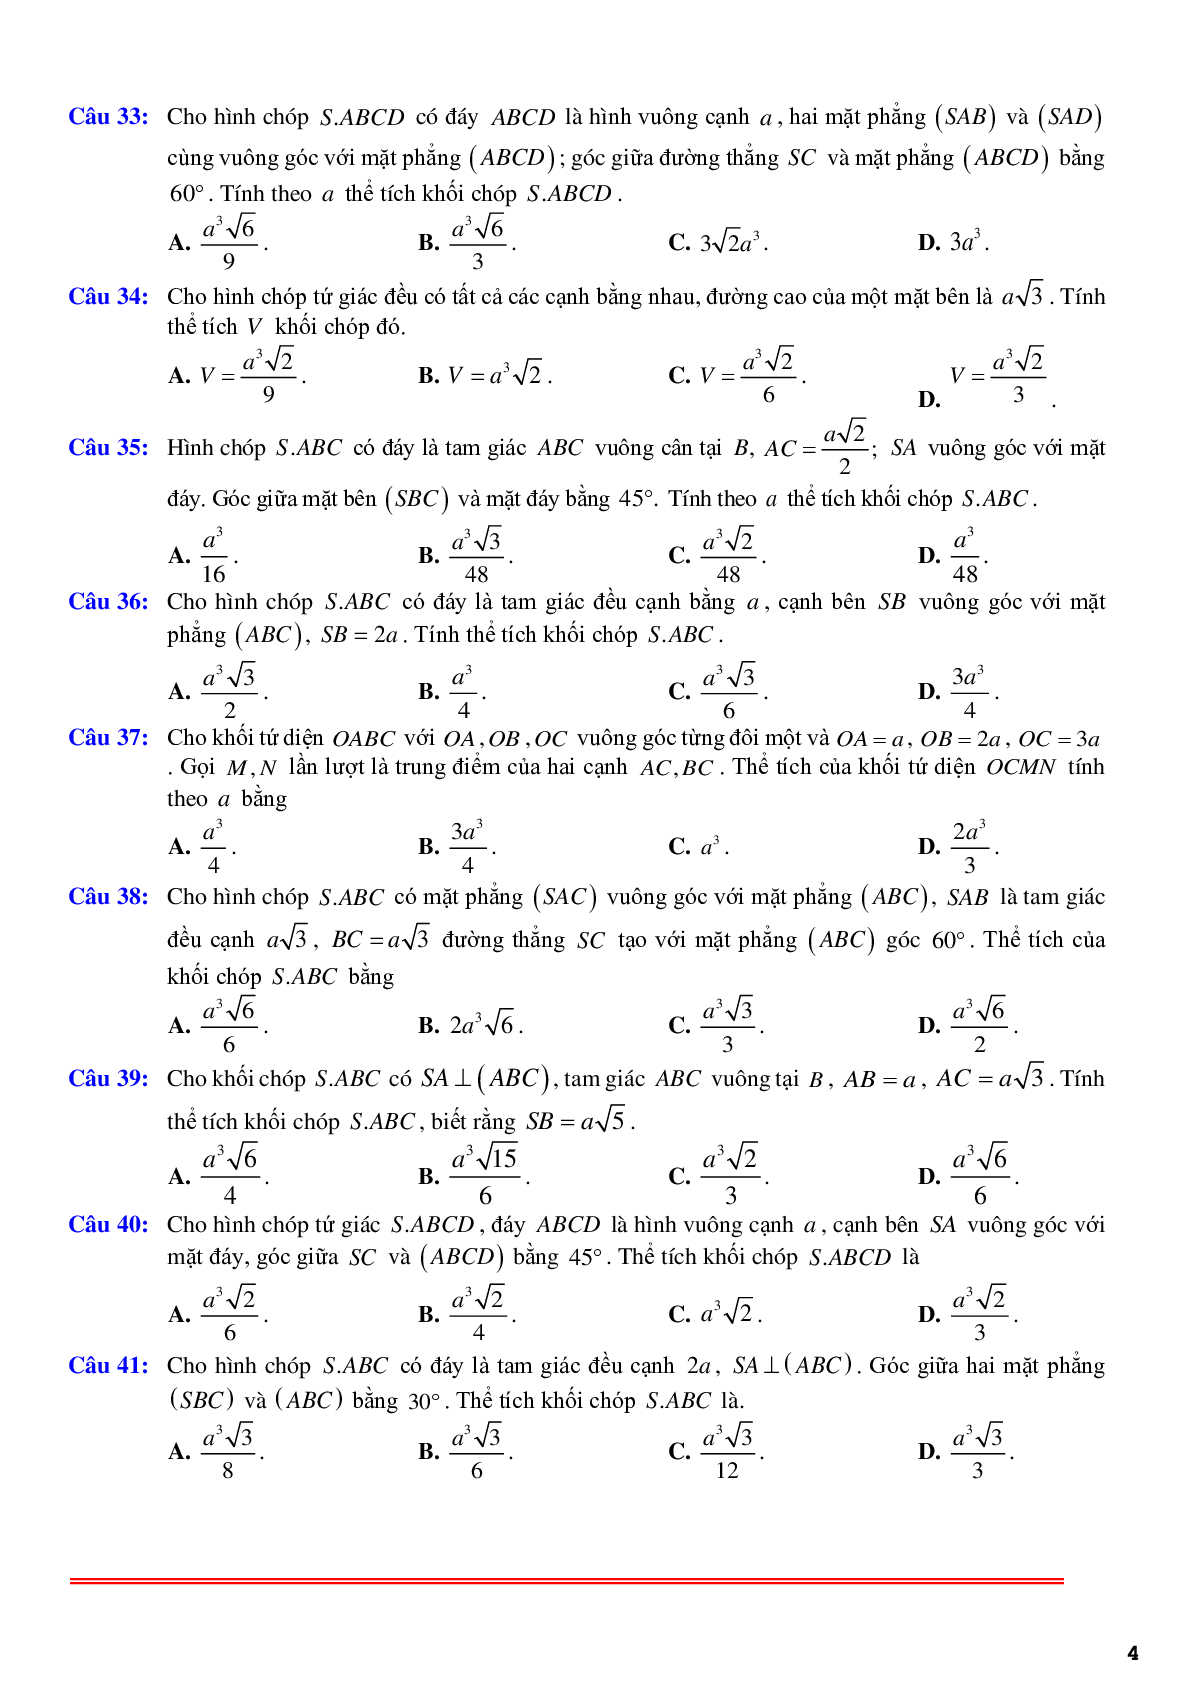 97 câu trắc nghiệm về thể thích khối chóp có một cạnh bên vuông góc với đáy phần 1 - có đáp án chi tiết (trang 4)